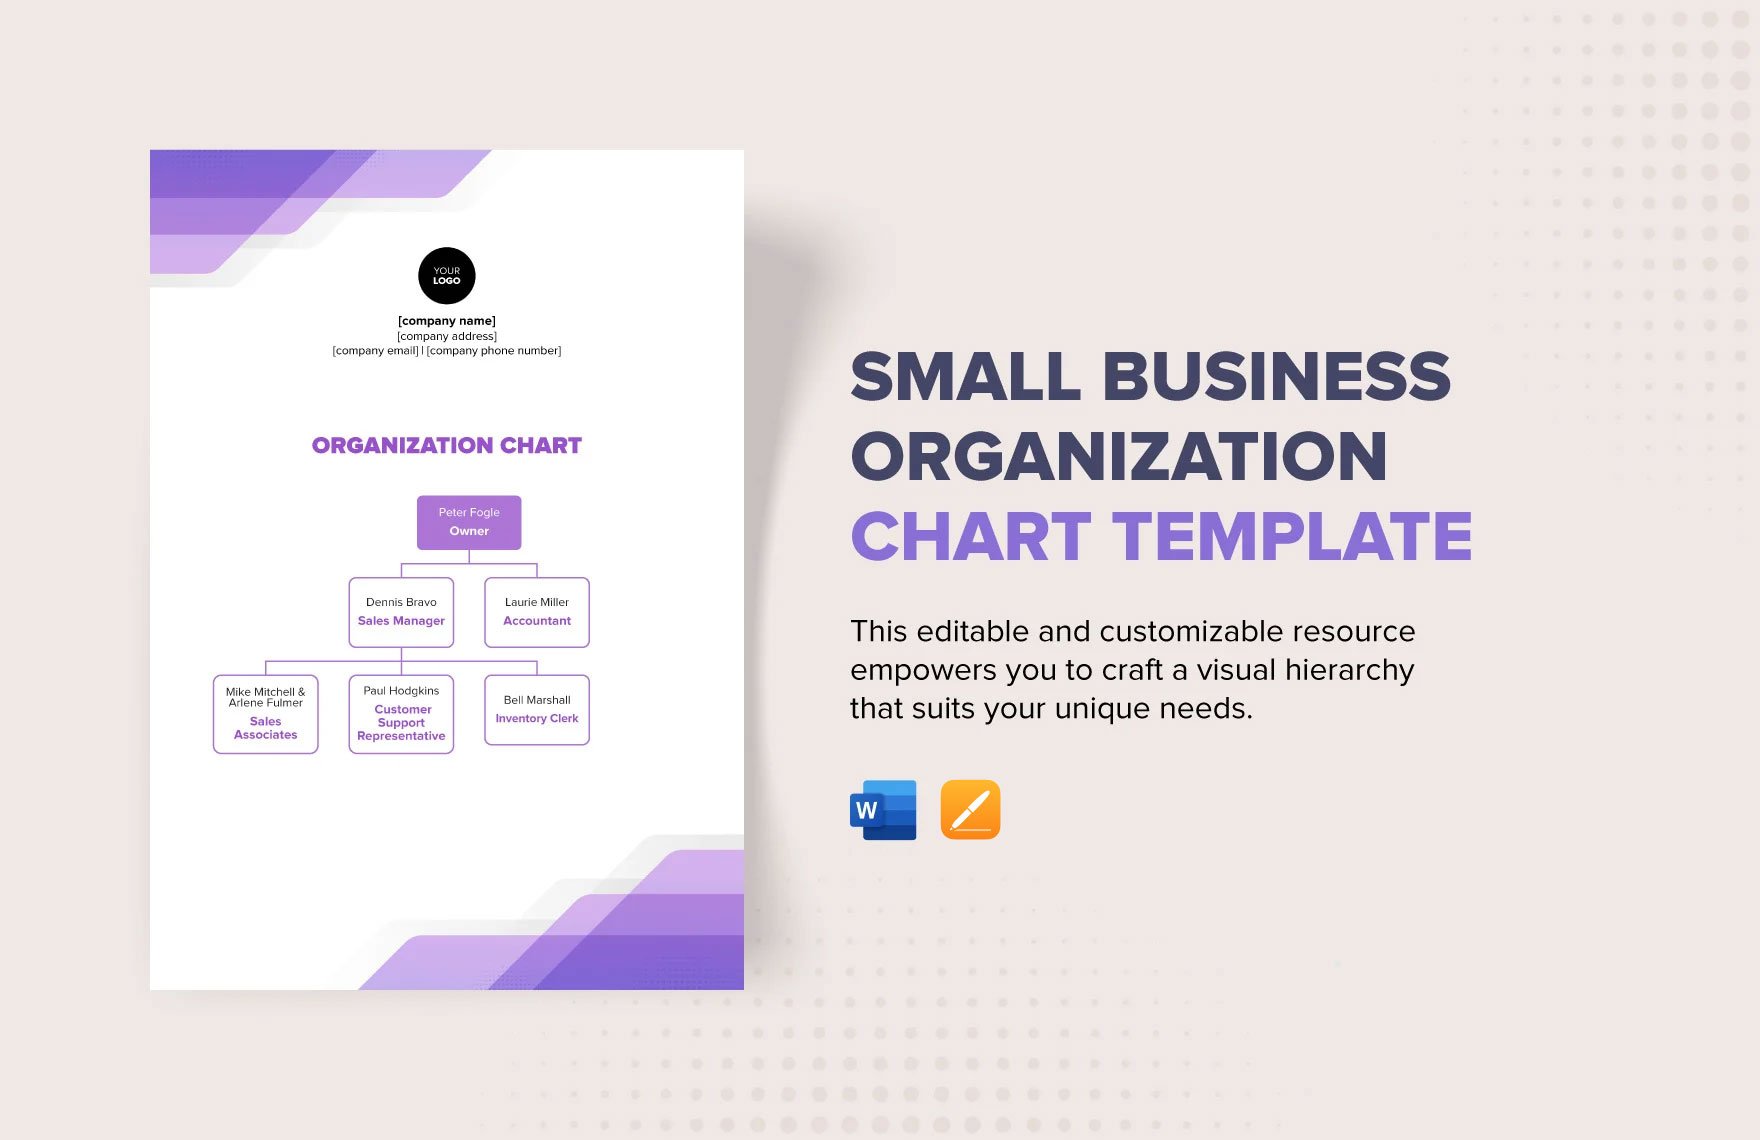 Small Business Organization Chart Template